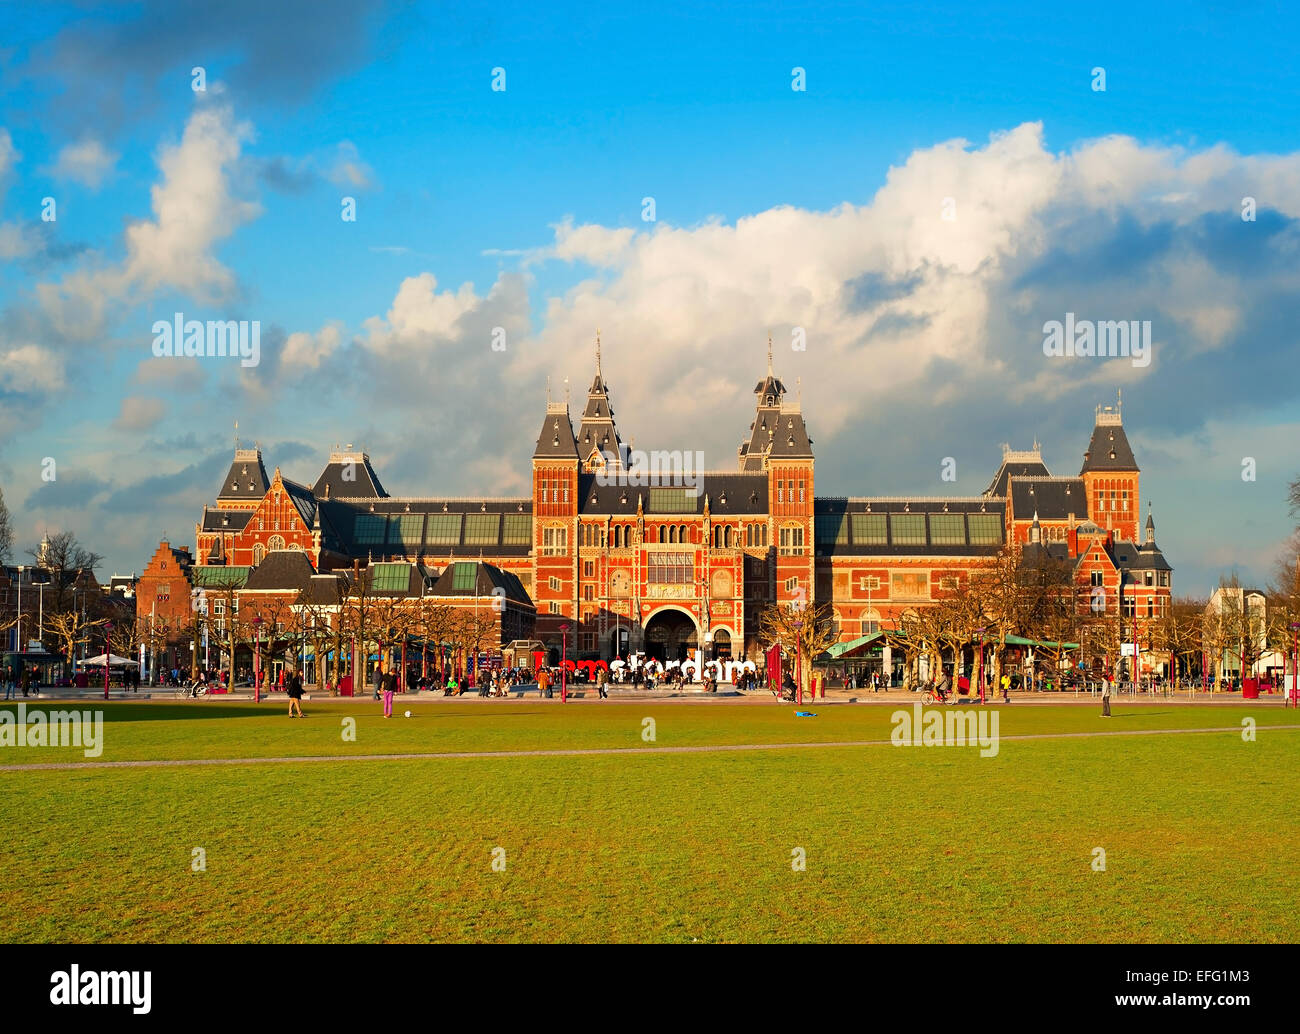 Das Rijksmuseum Amsterdam Museumsbereich mit den Worten Amsterdam. Niederlande Stockfoto